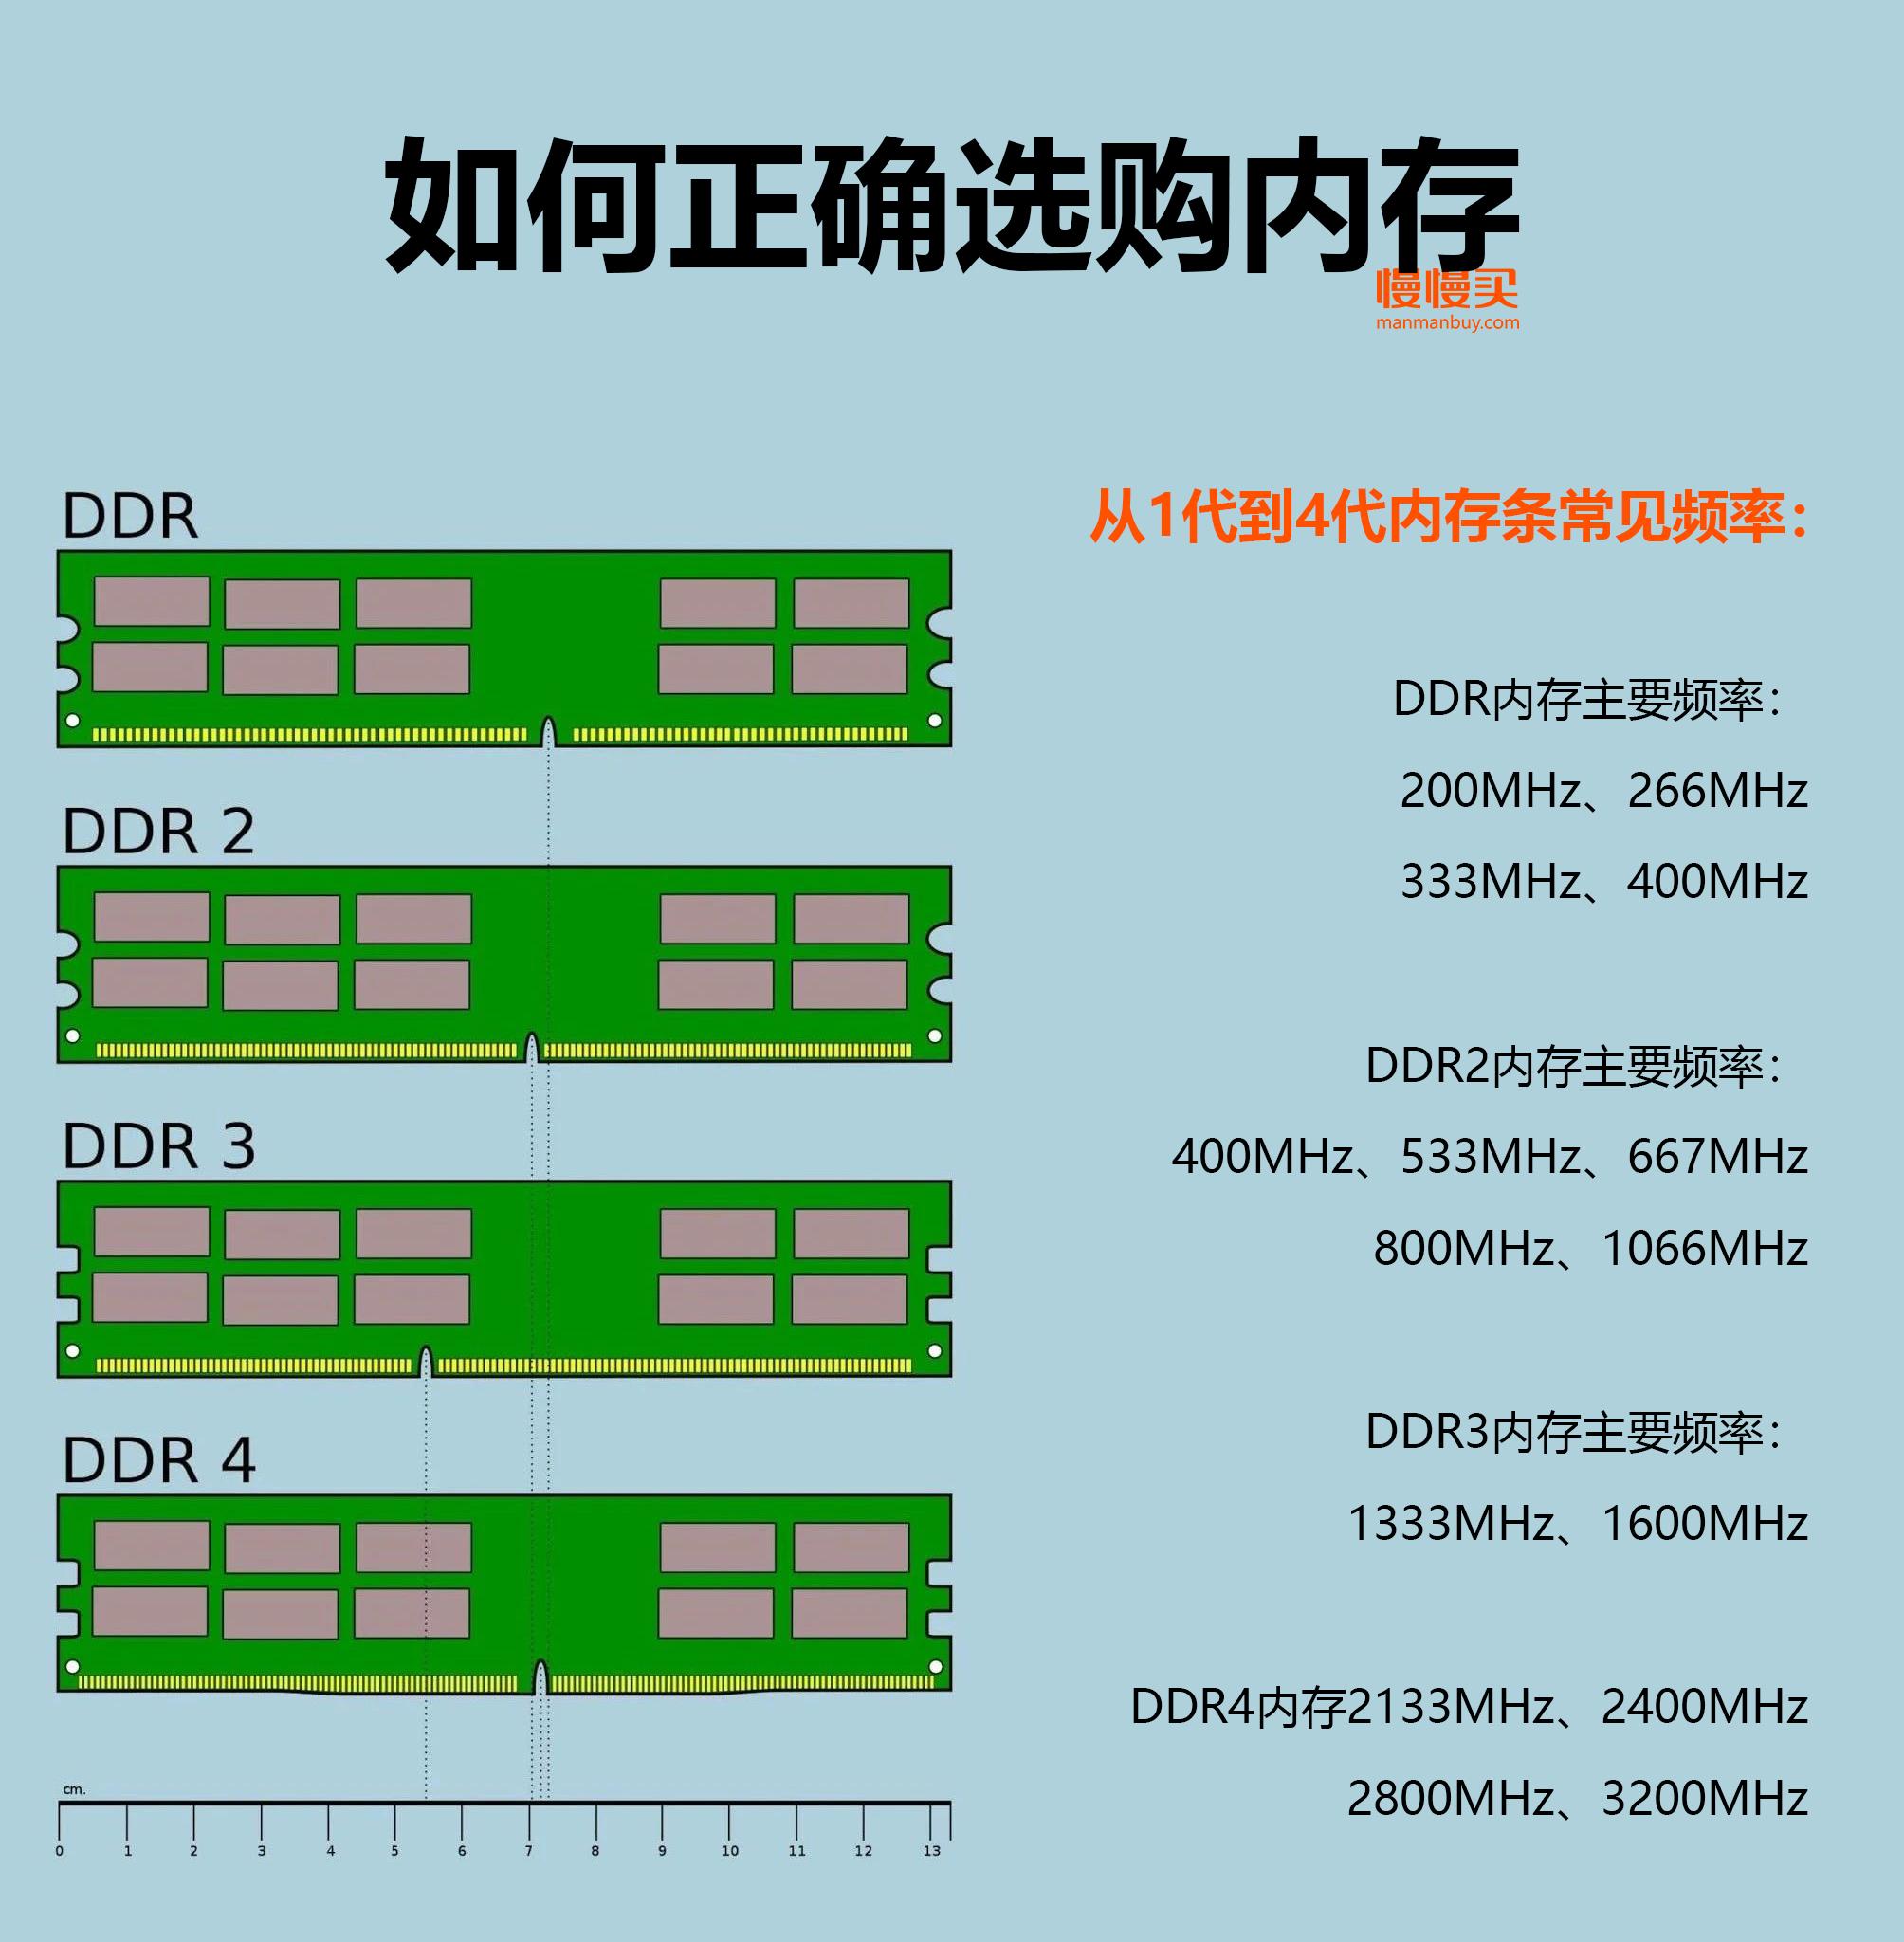 ddr4内存手机 DDR4内存手机选购全攻略，品牌指南、内存量对比一网打尽  第3张